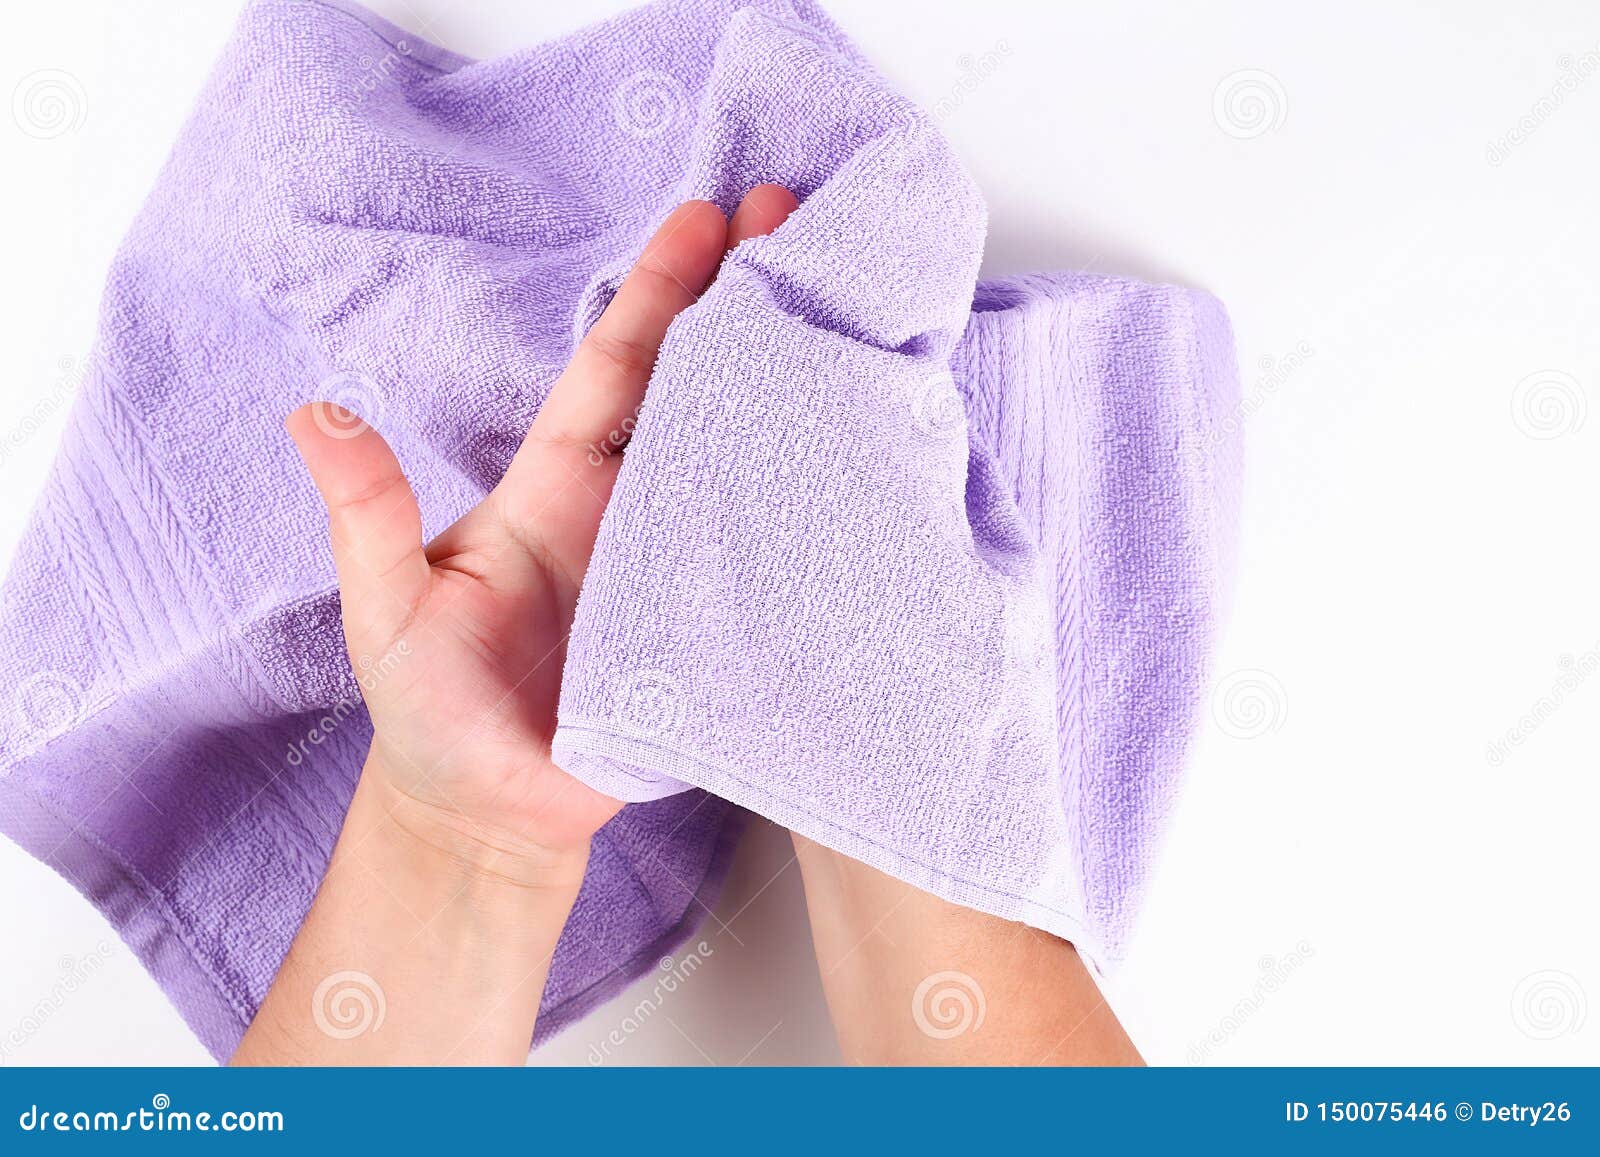 Стянули полотенце